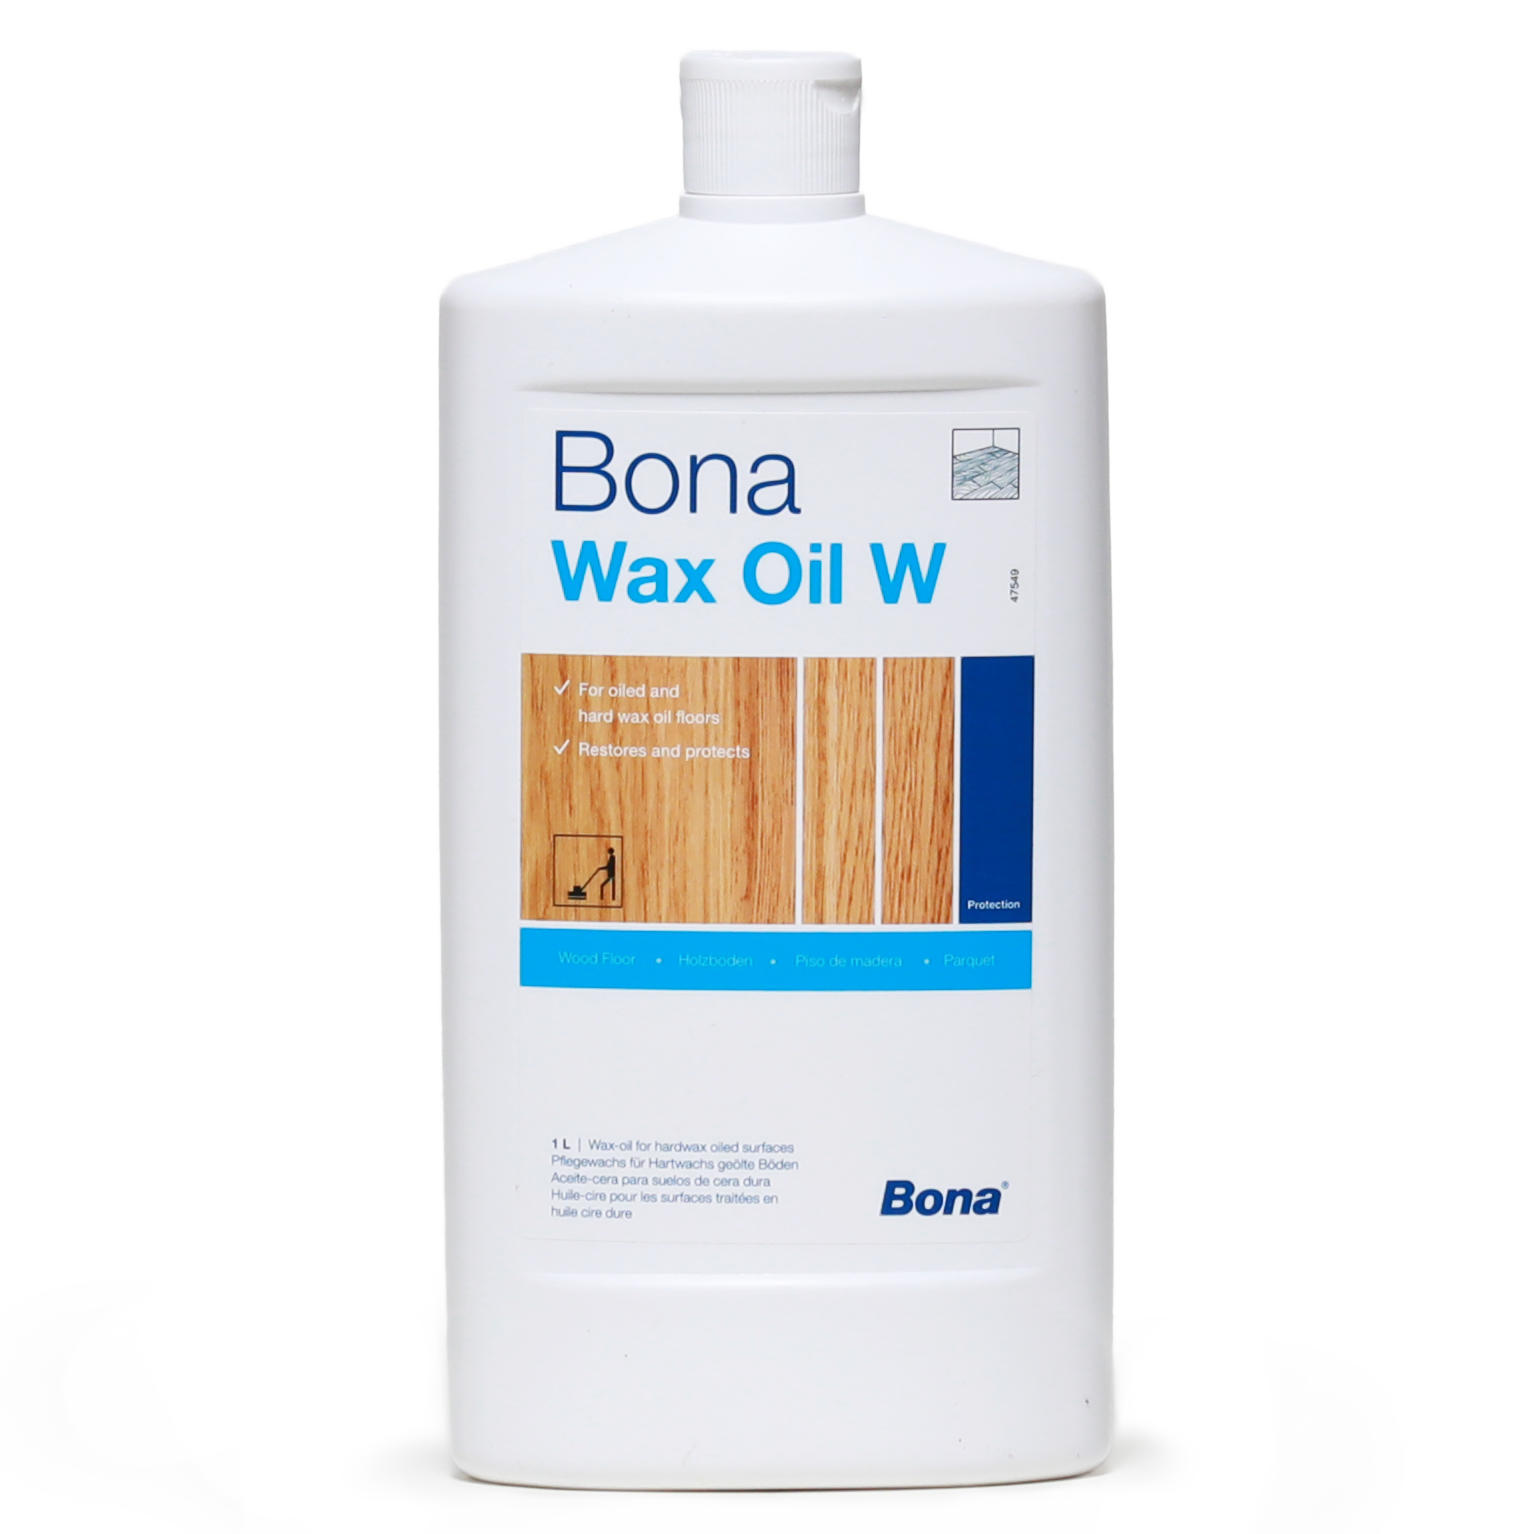 Bona Wax Oil W